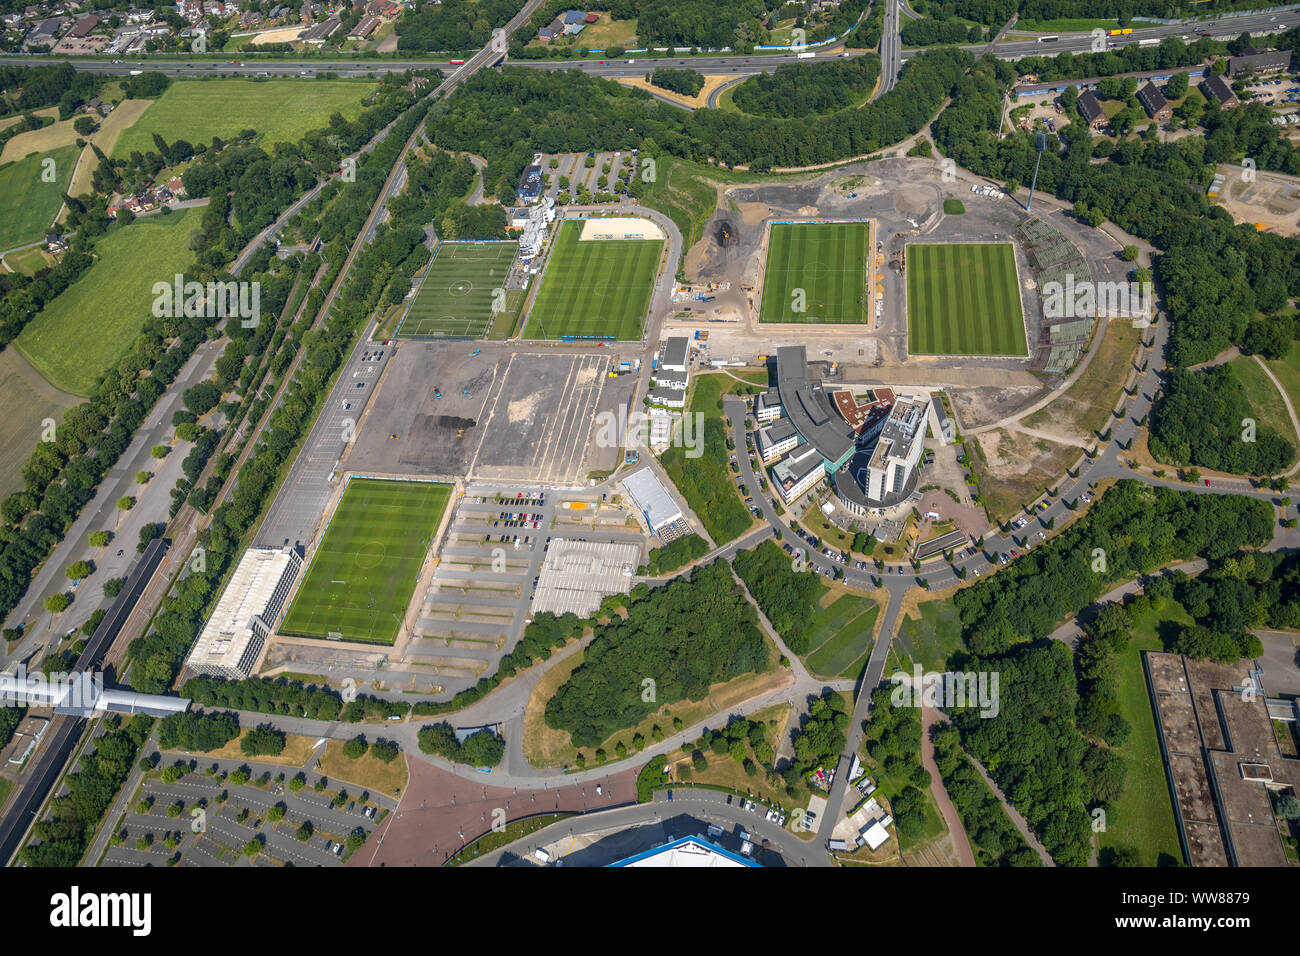 Vue aérienne, l'ARENA PARK Gelsenkirchen Veltins Arena, Arena de Gelsenkirchen est le stade de football de la Bundesliga allemande de football club FC Schalke 04, l'ancien Park Stadium, Gelsenkirchen, Ruhr, Rhénanie du Nord-Westphalie, Allemagne Banque D'Images